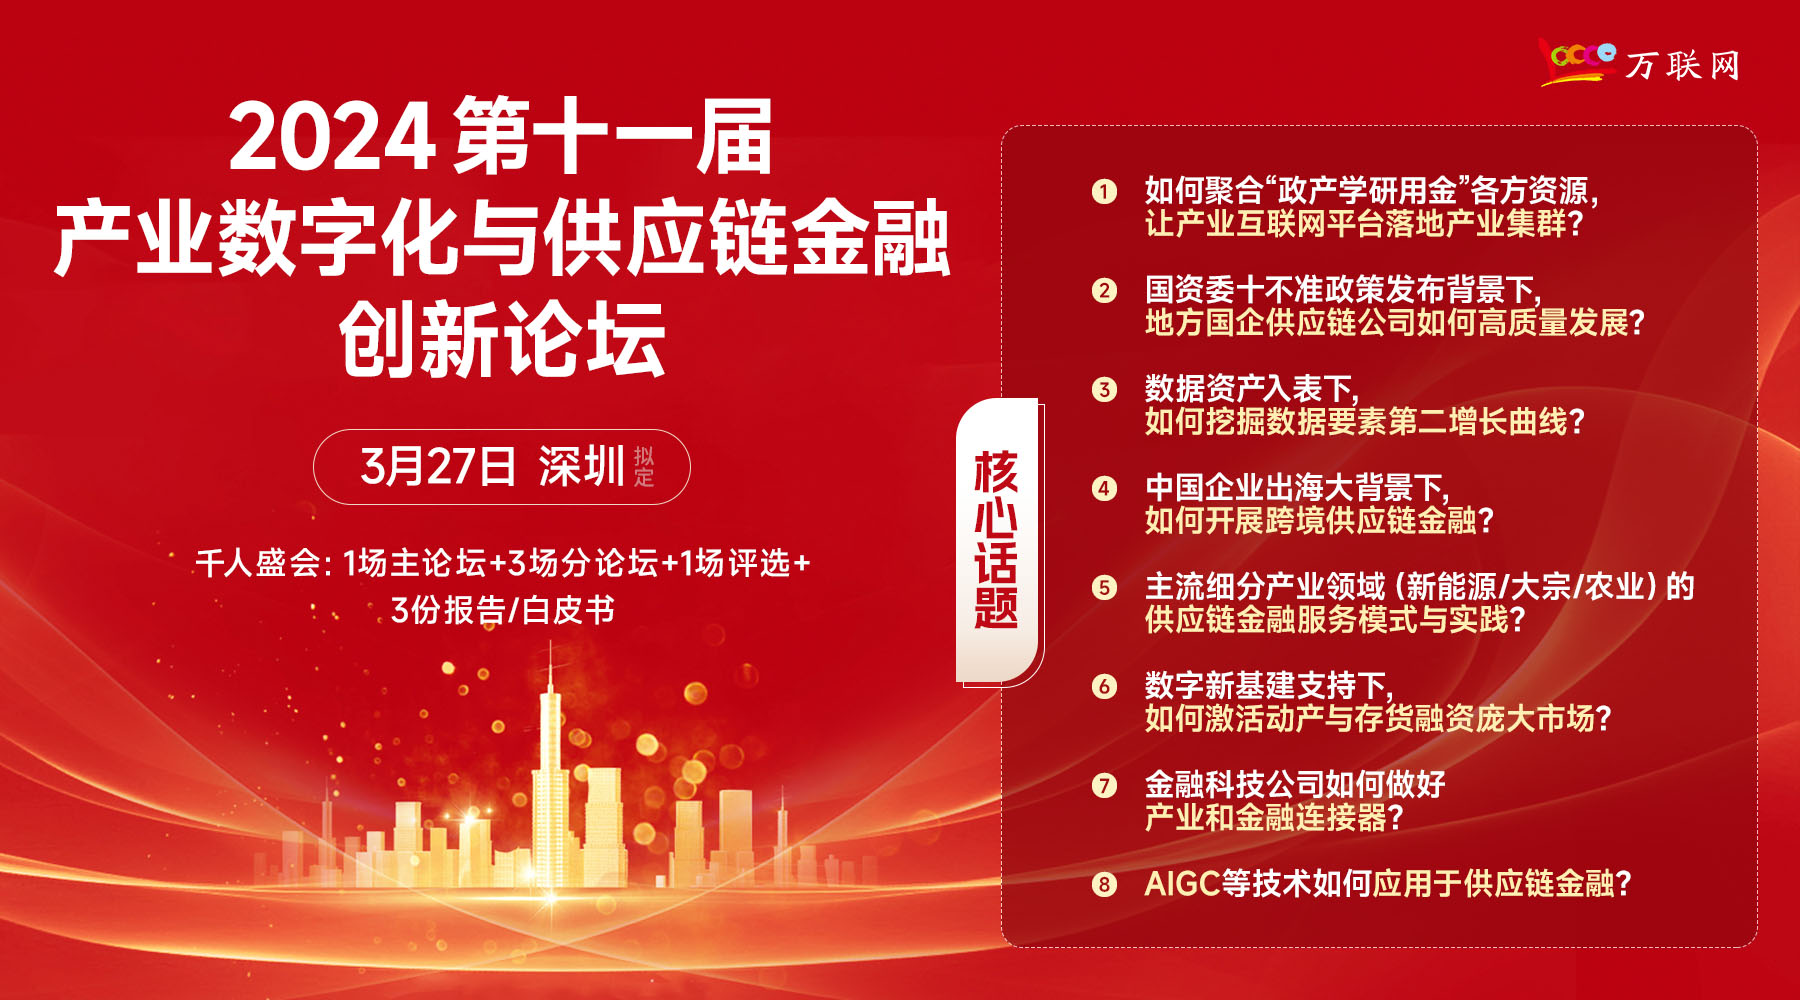 【3.27深圳】第十一屆產業數字化與供應鏈金融創新論壇